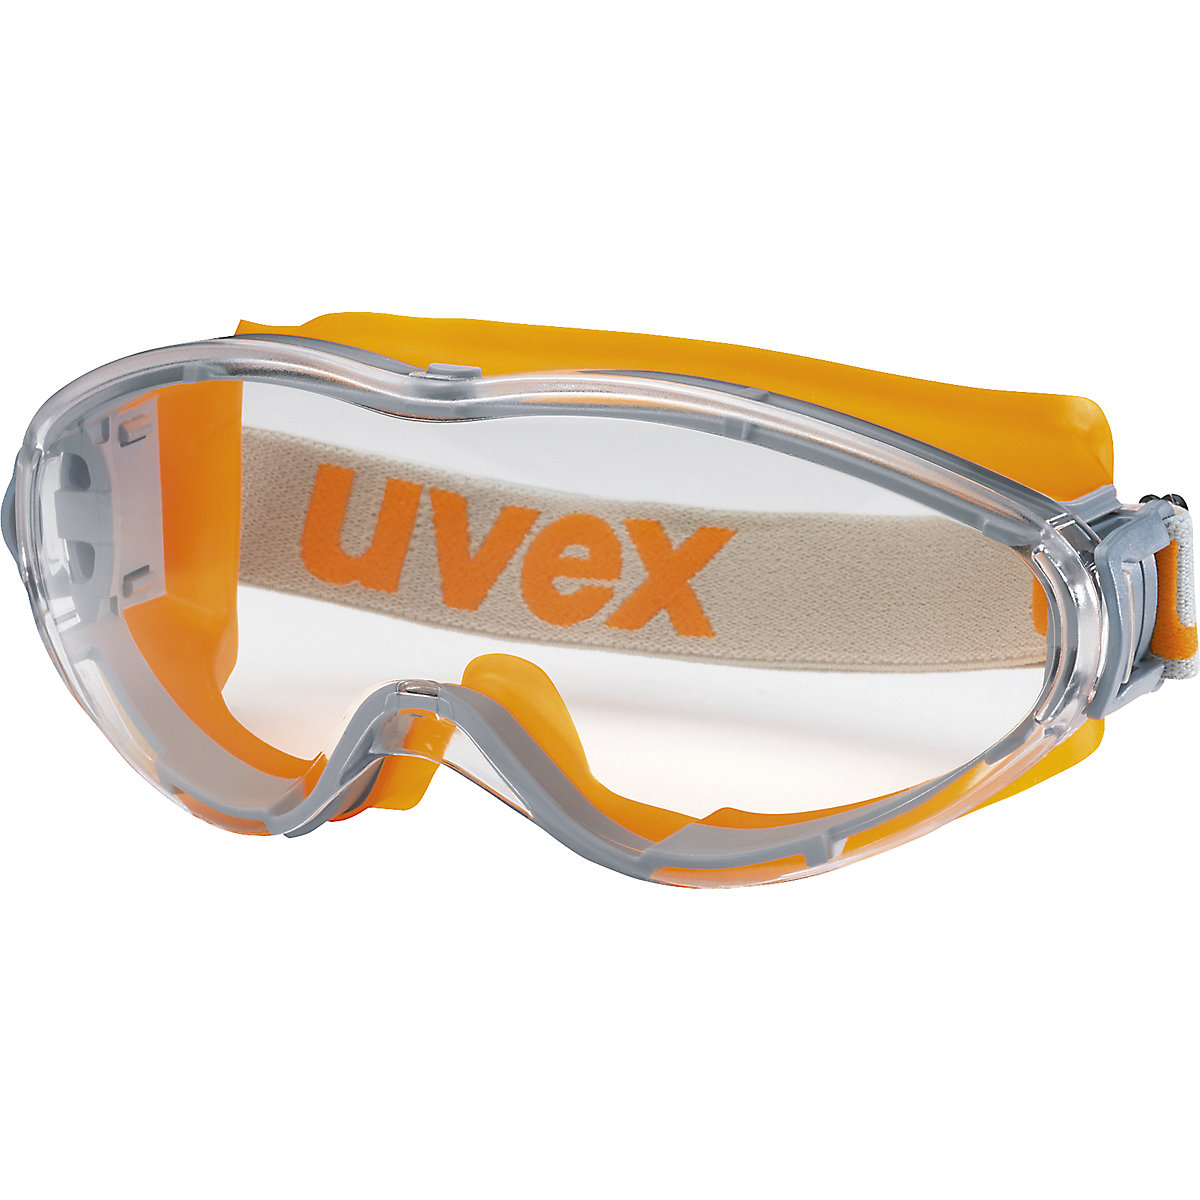 Gogle ochronne z pełną widocznością ultrasonic – Uvex